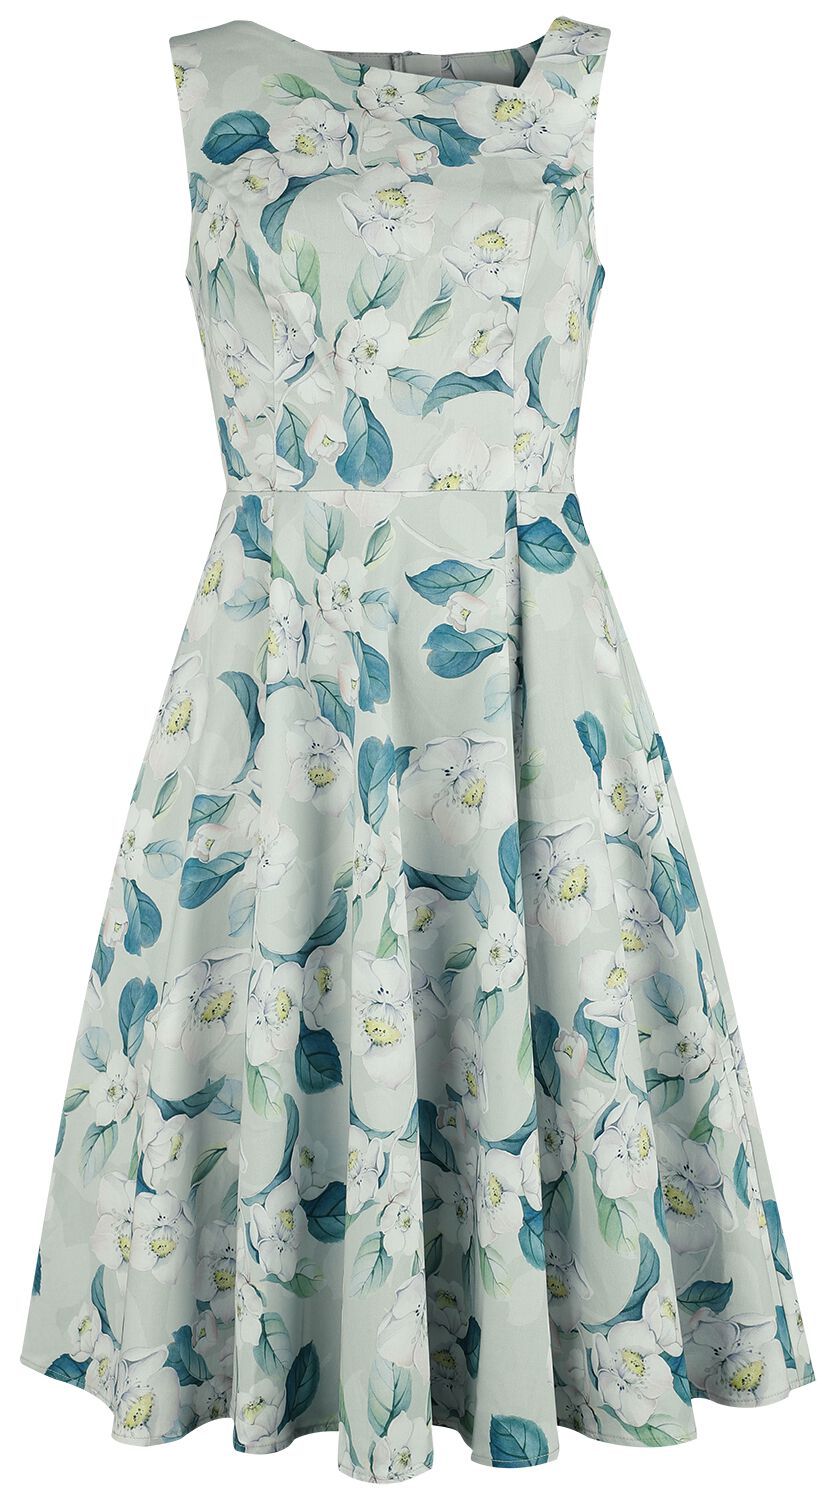 H&R London - Rockabilly Kleid knielang - Rey Floral Swing Dress - XS bis 4XL - für Damen - Größe S - grün/weiß